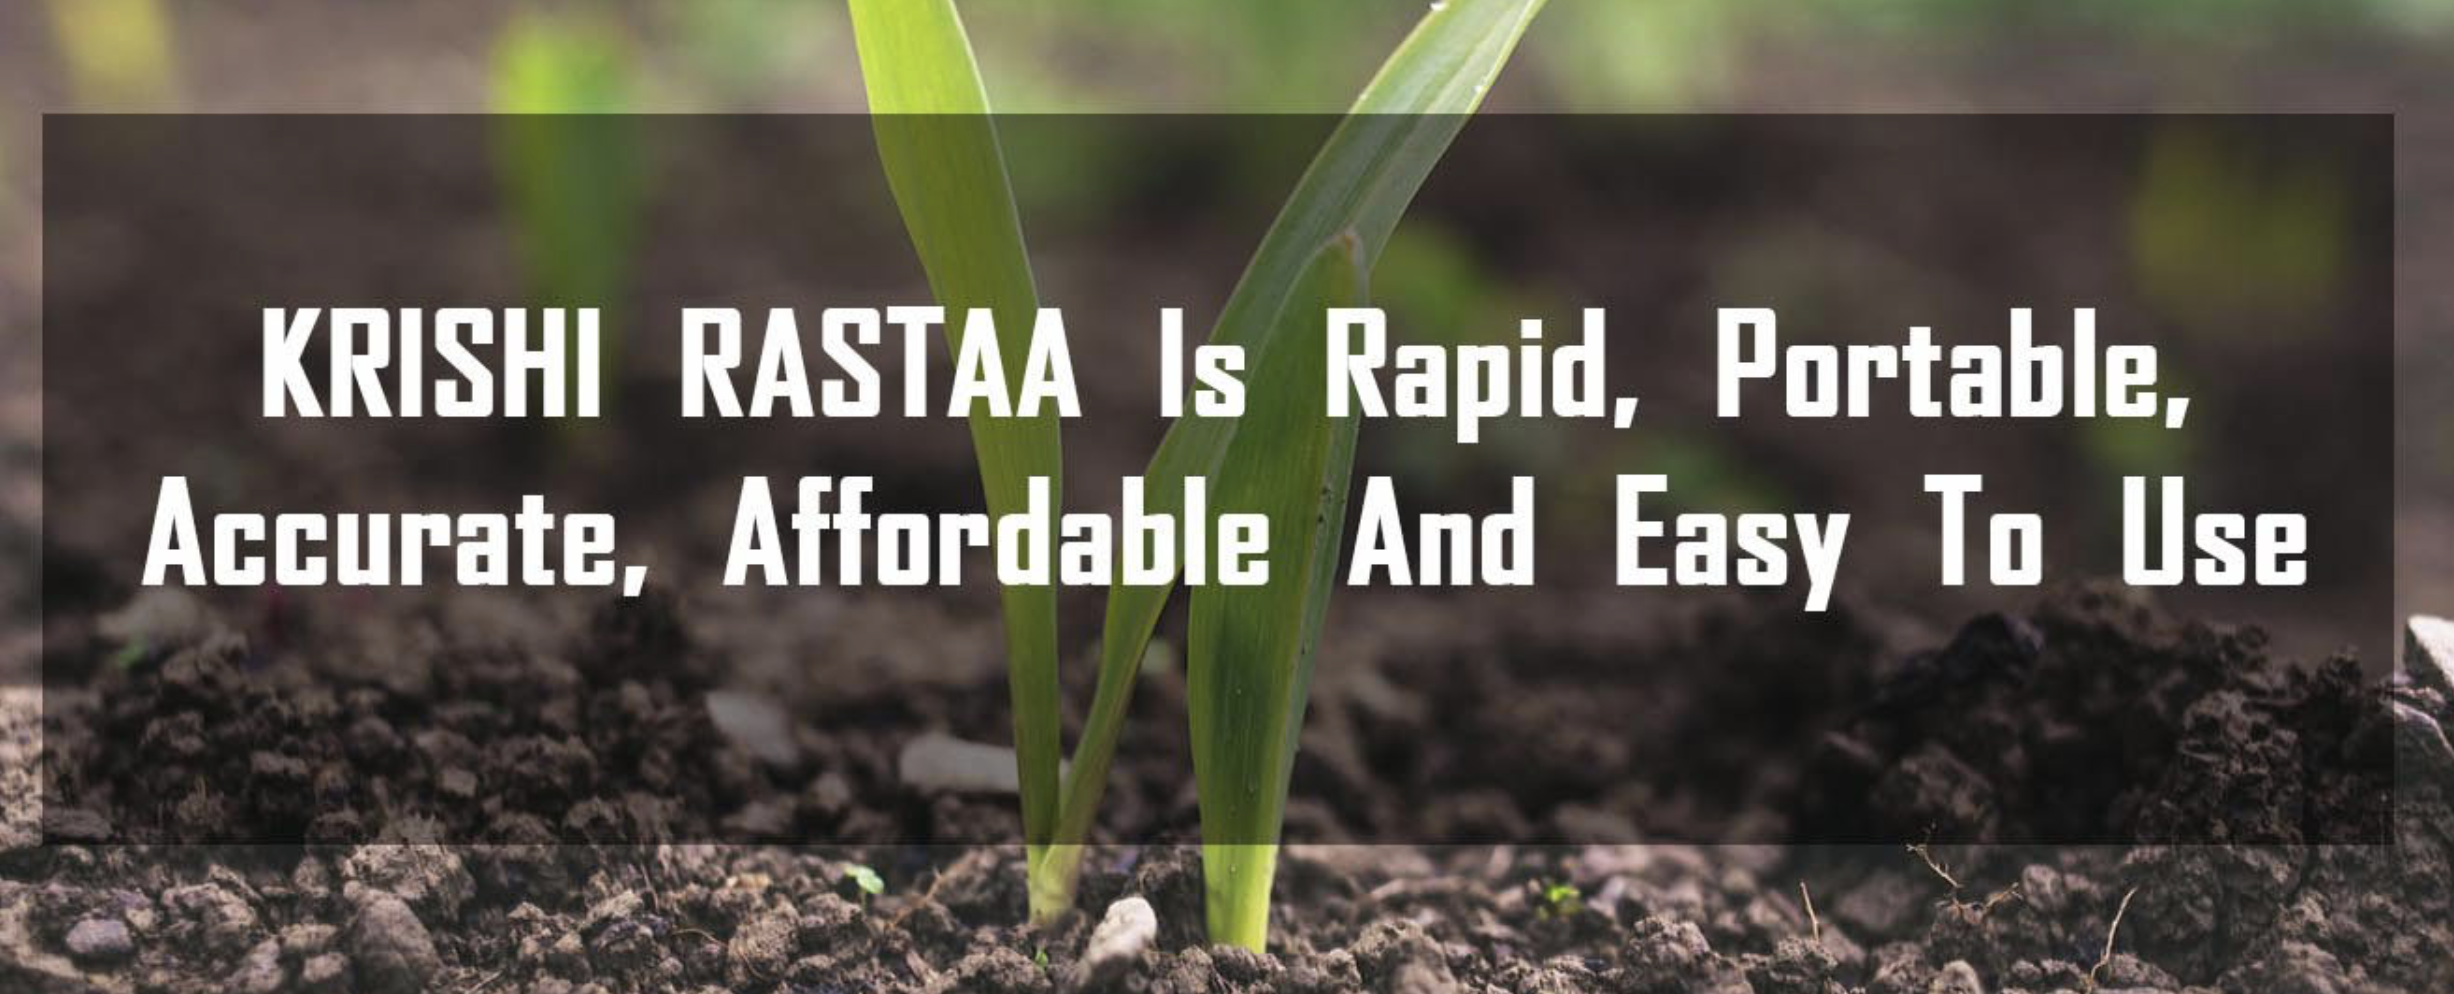 帮农户迅速了解土壤健康状况，「Krishitantra」获 100 万美元种子轮融资